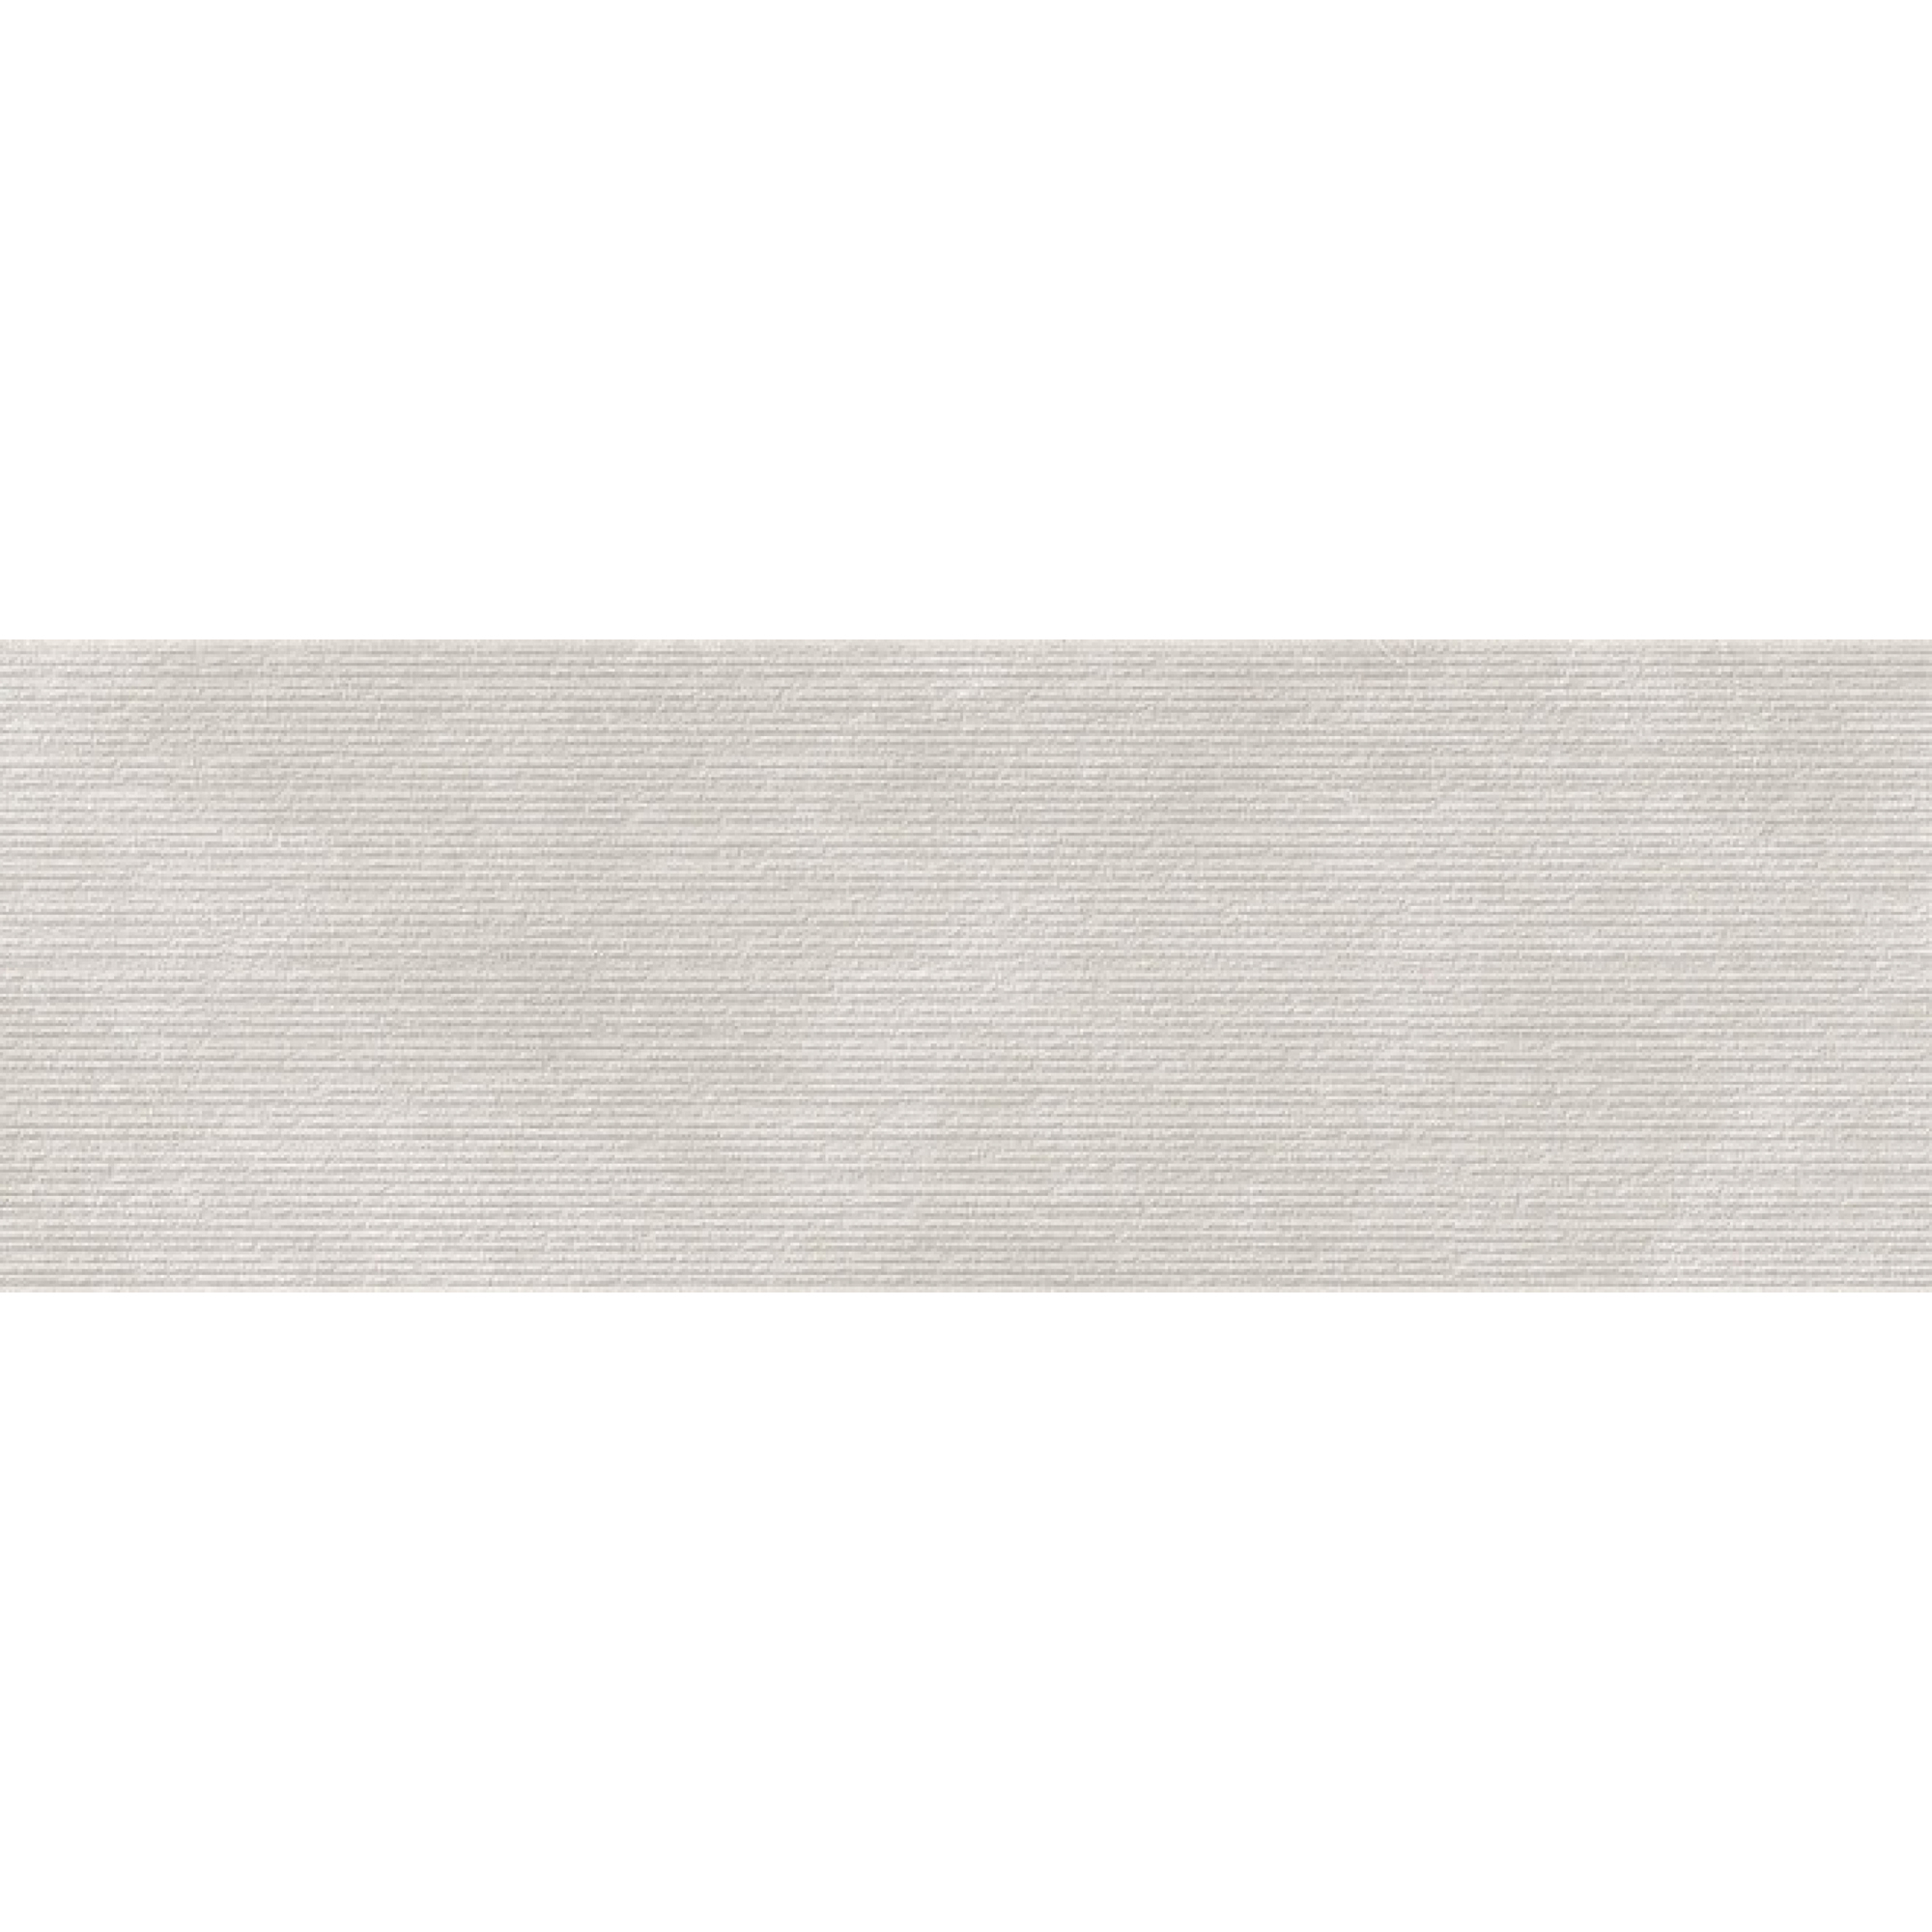 Плитка Kerama Marazzi Эскориал серый структура обрезной 40x120 см 14012R плитка kerama marazzi риальто sg634200r 60x60 см серый обрезной